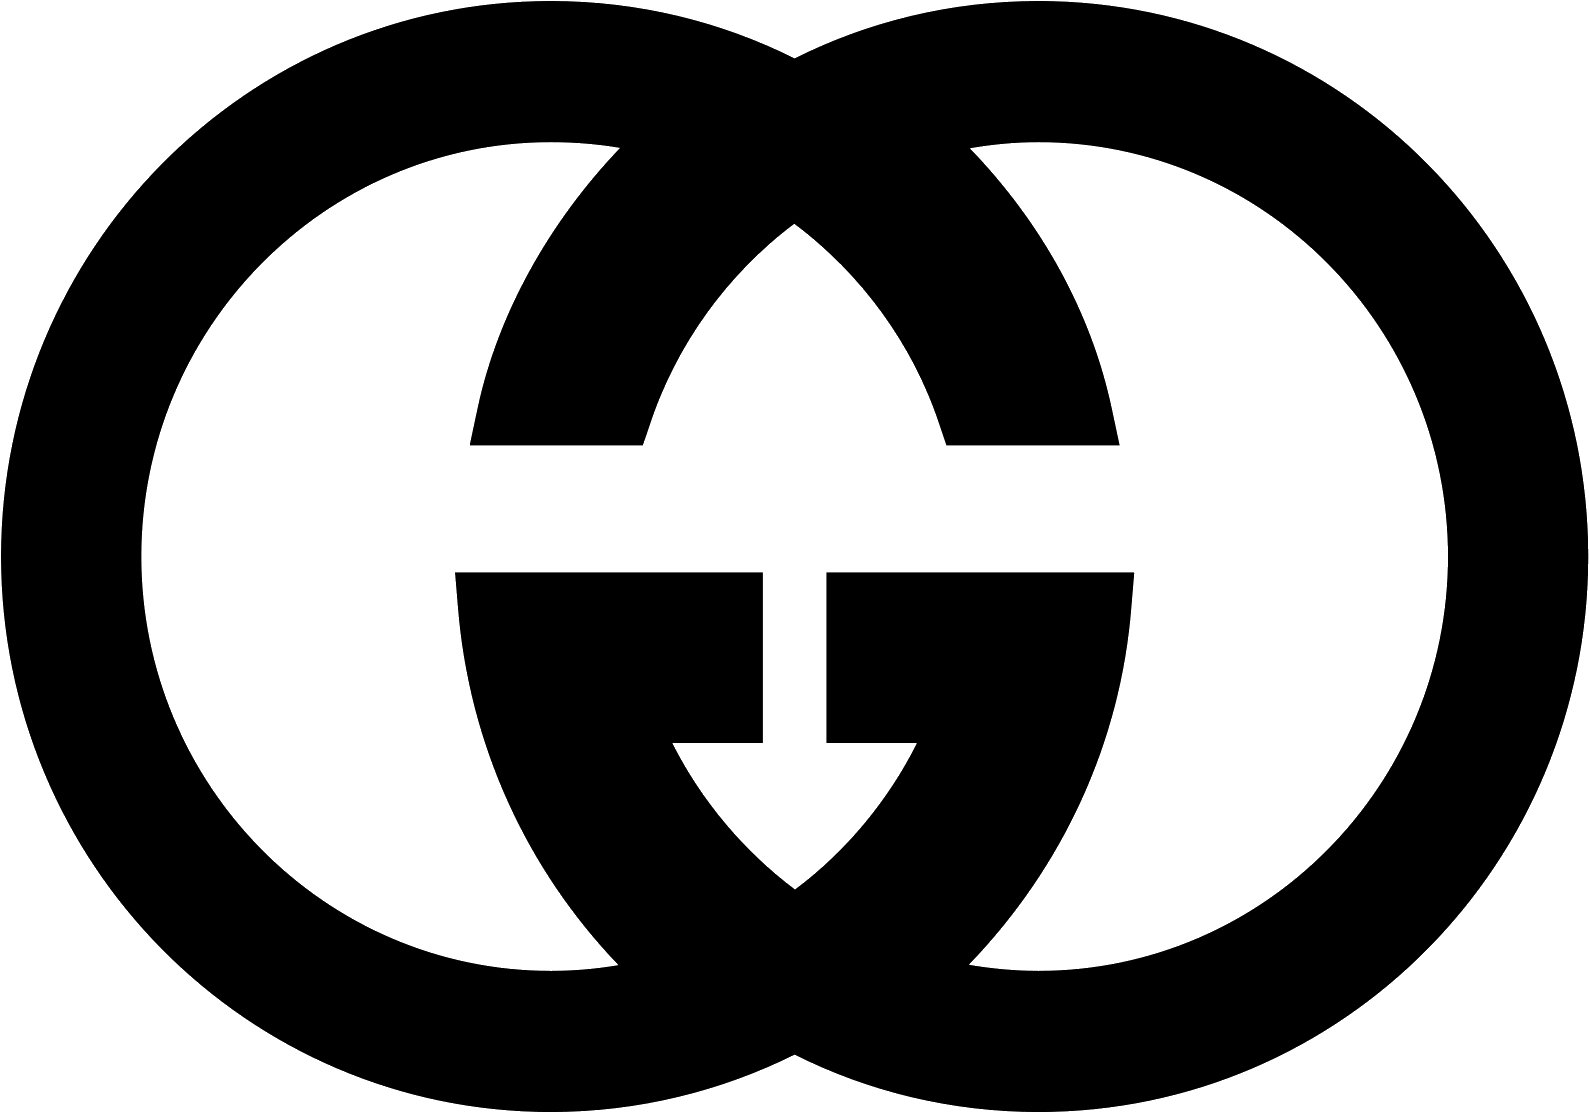 the gucci logo